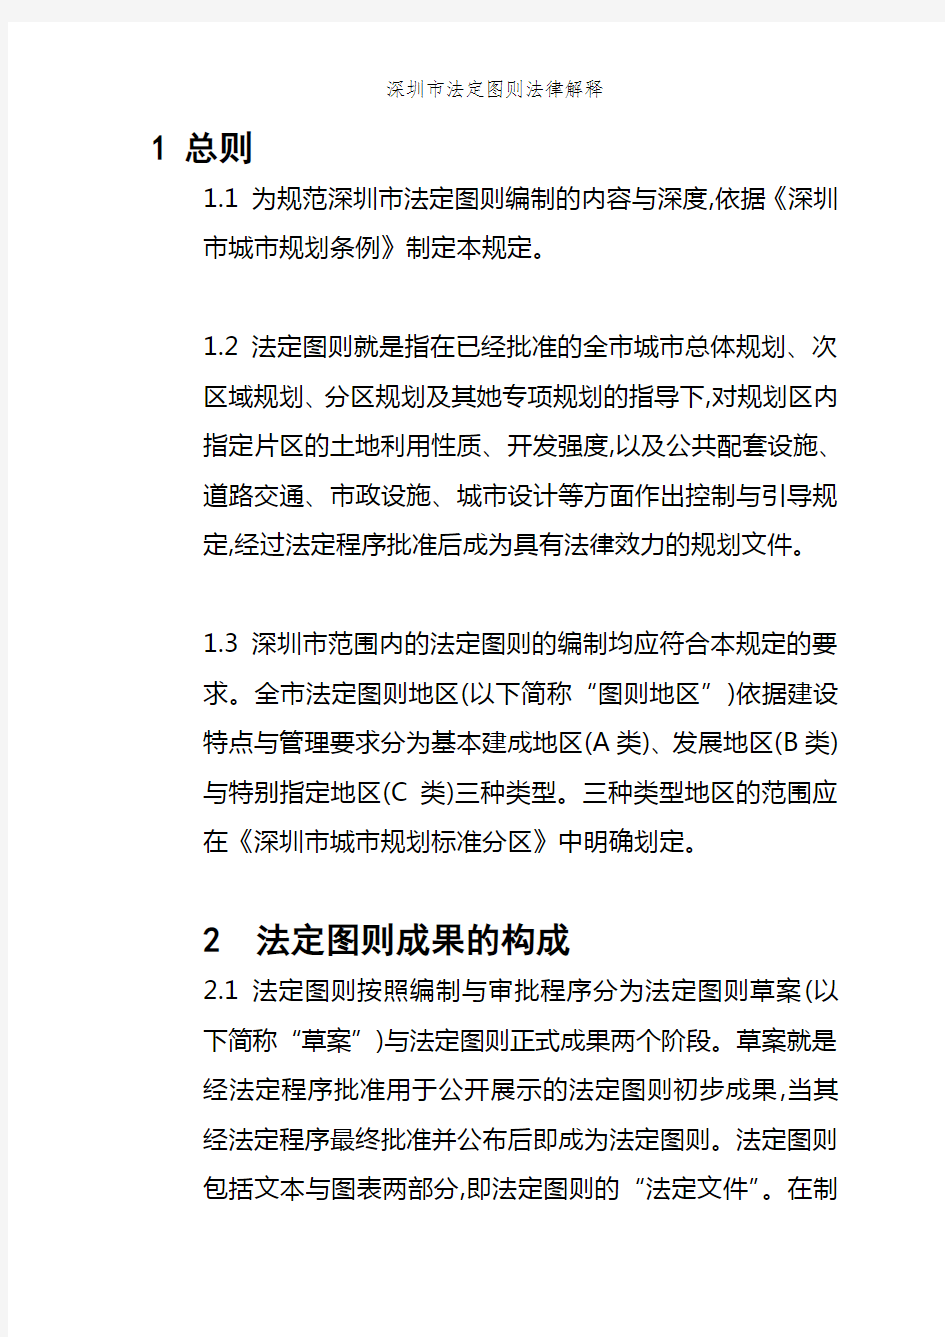 深圳市法定图则法律解释